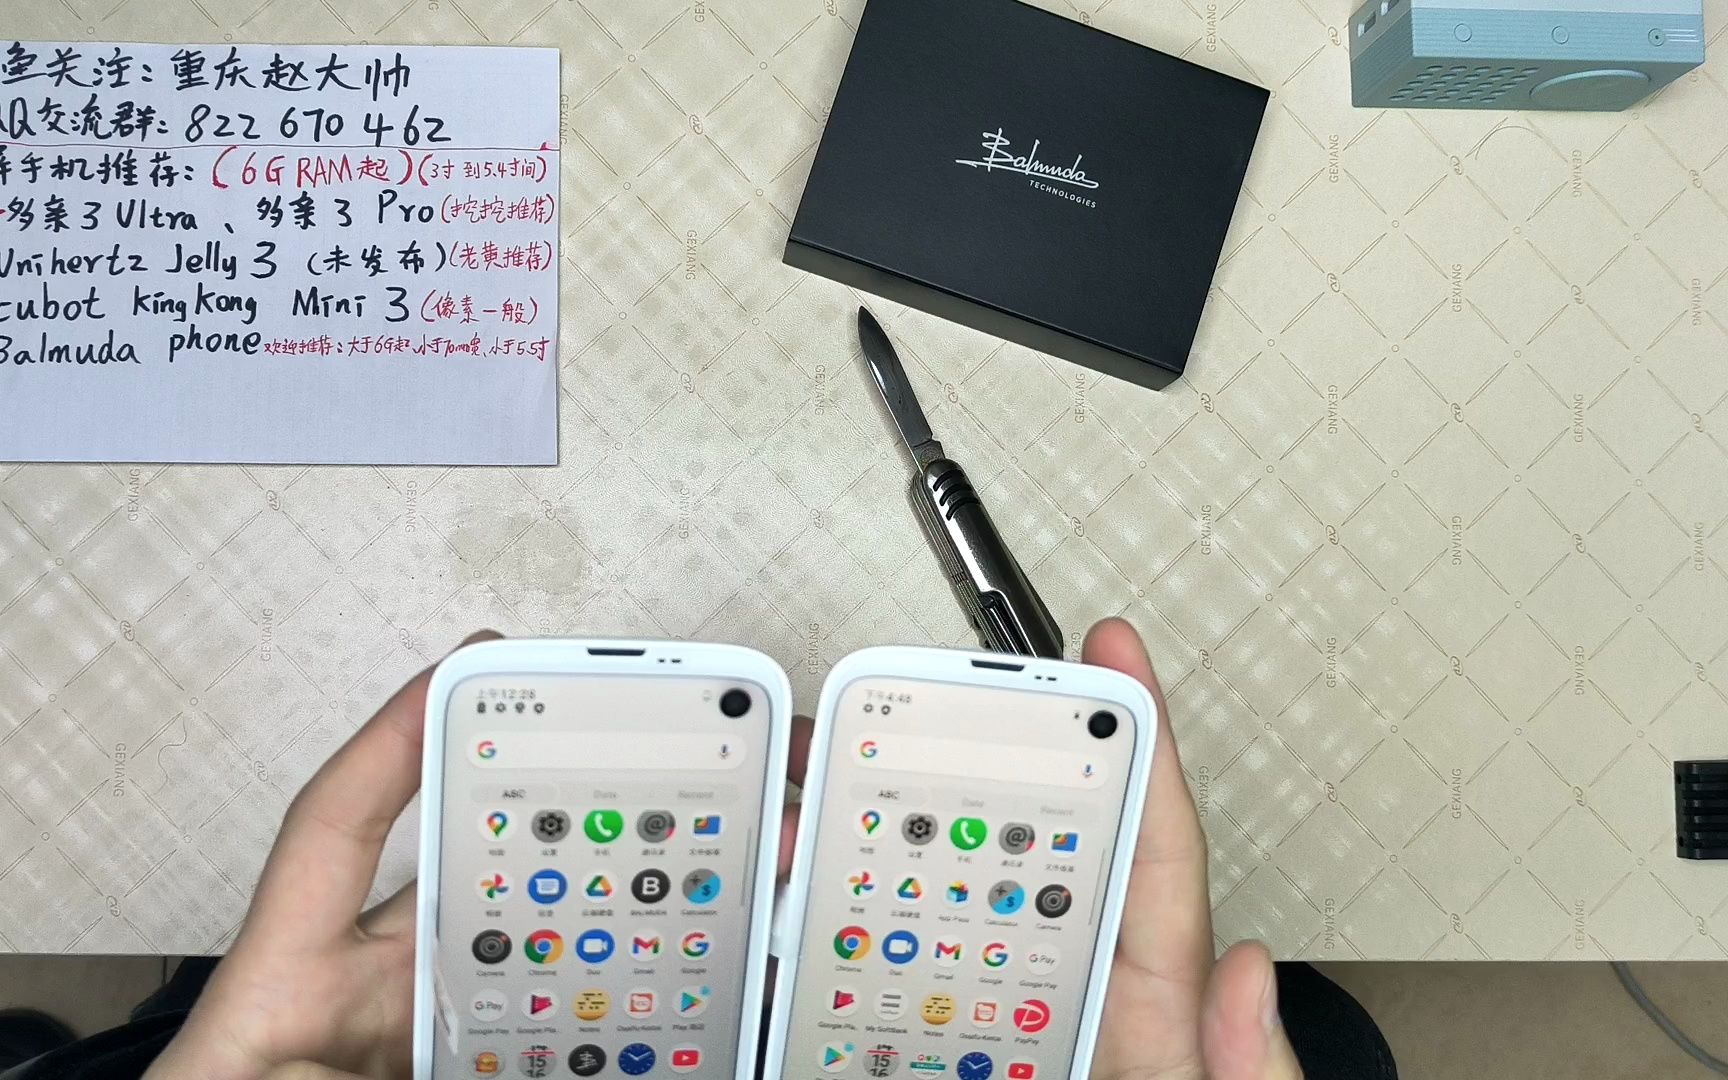 绝美白色日本巴慕达小屏手机双版本对比与大全套官方配件体验 让你一次看个够 么么哒 balmuda phone x01a vs a101bm